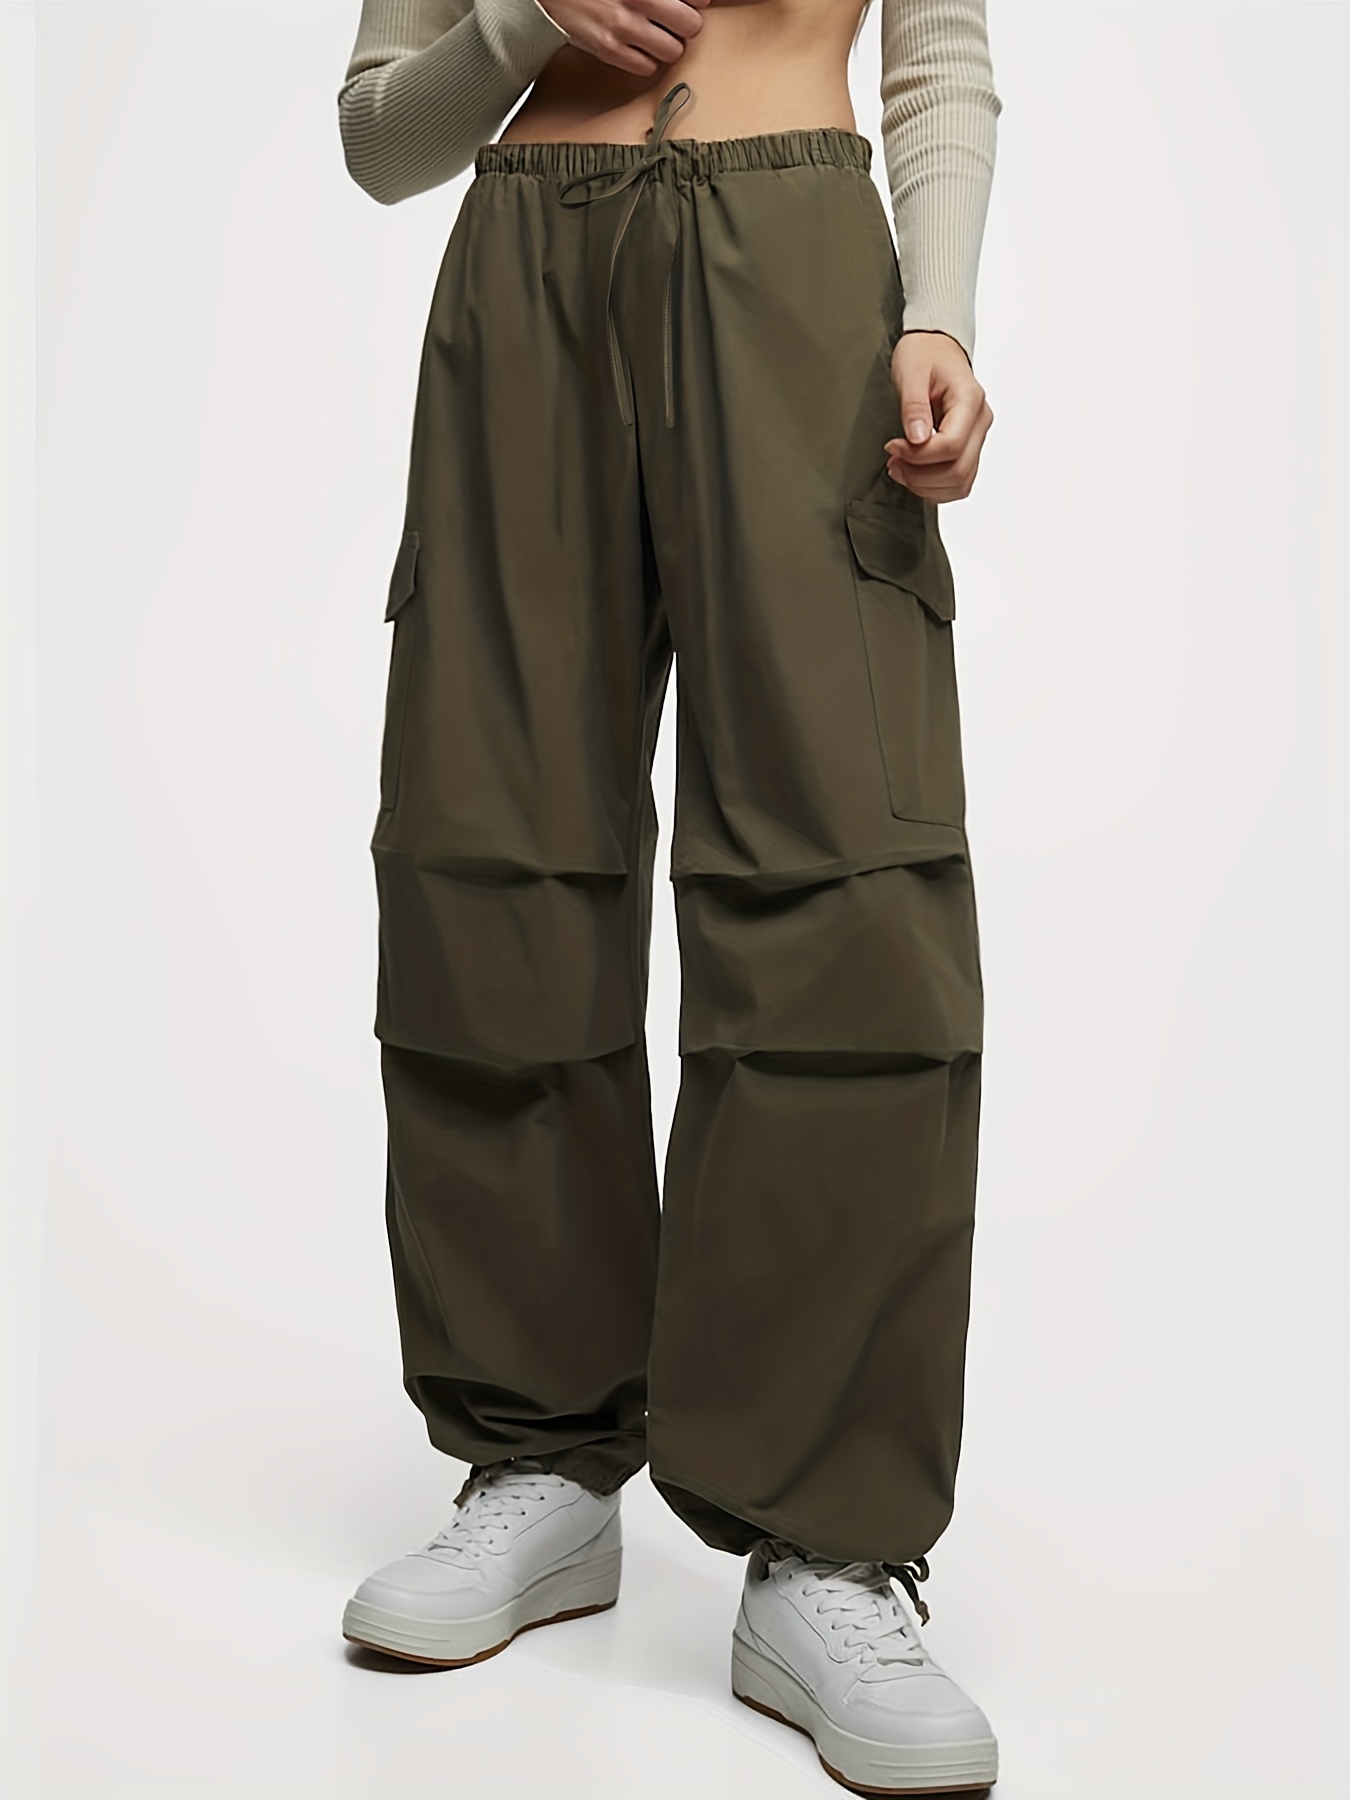 Pantalon Cargo Original de marque CULTUR en coton pour été, printemps,  automne et hiver, avec Poches sur les cotés (Poches Latérales)